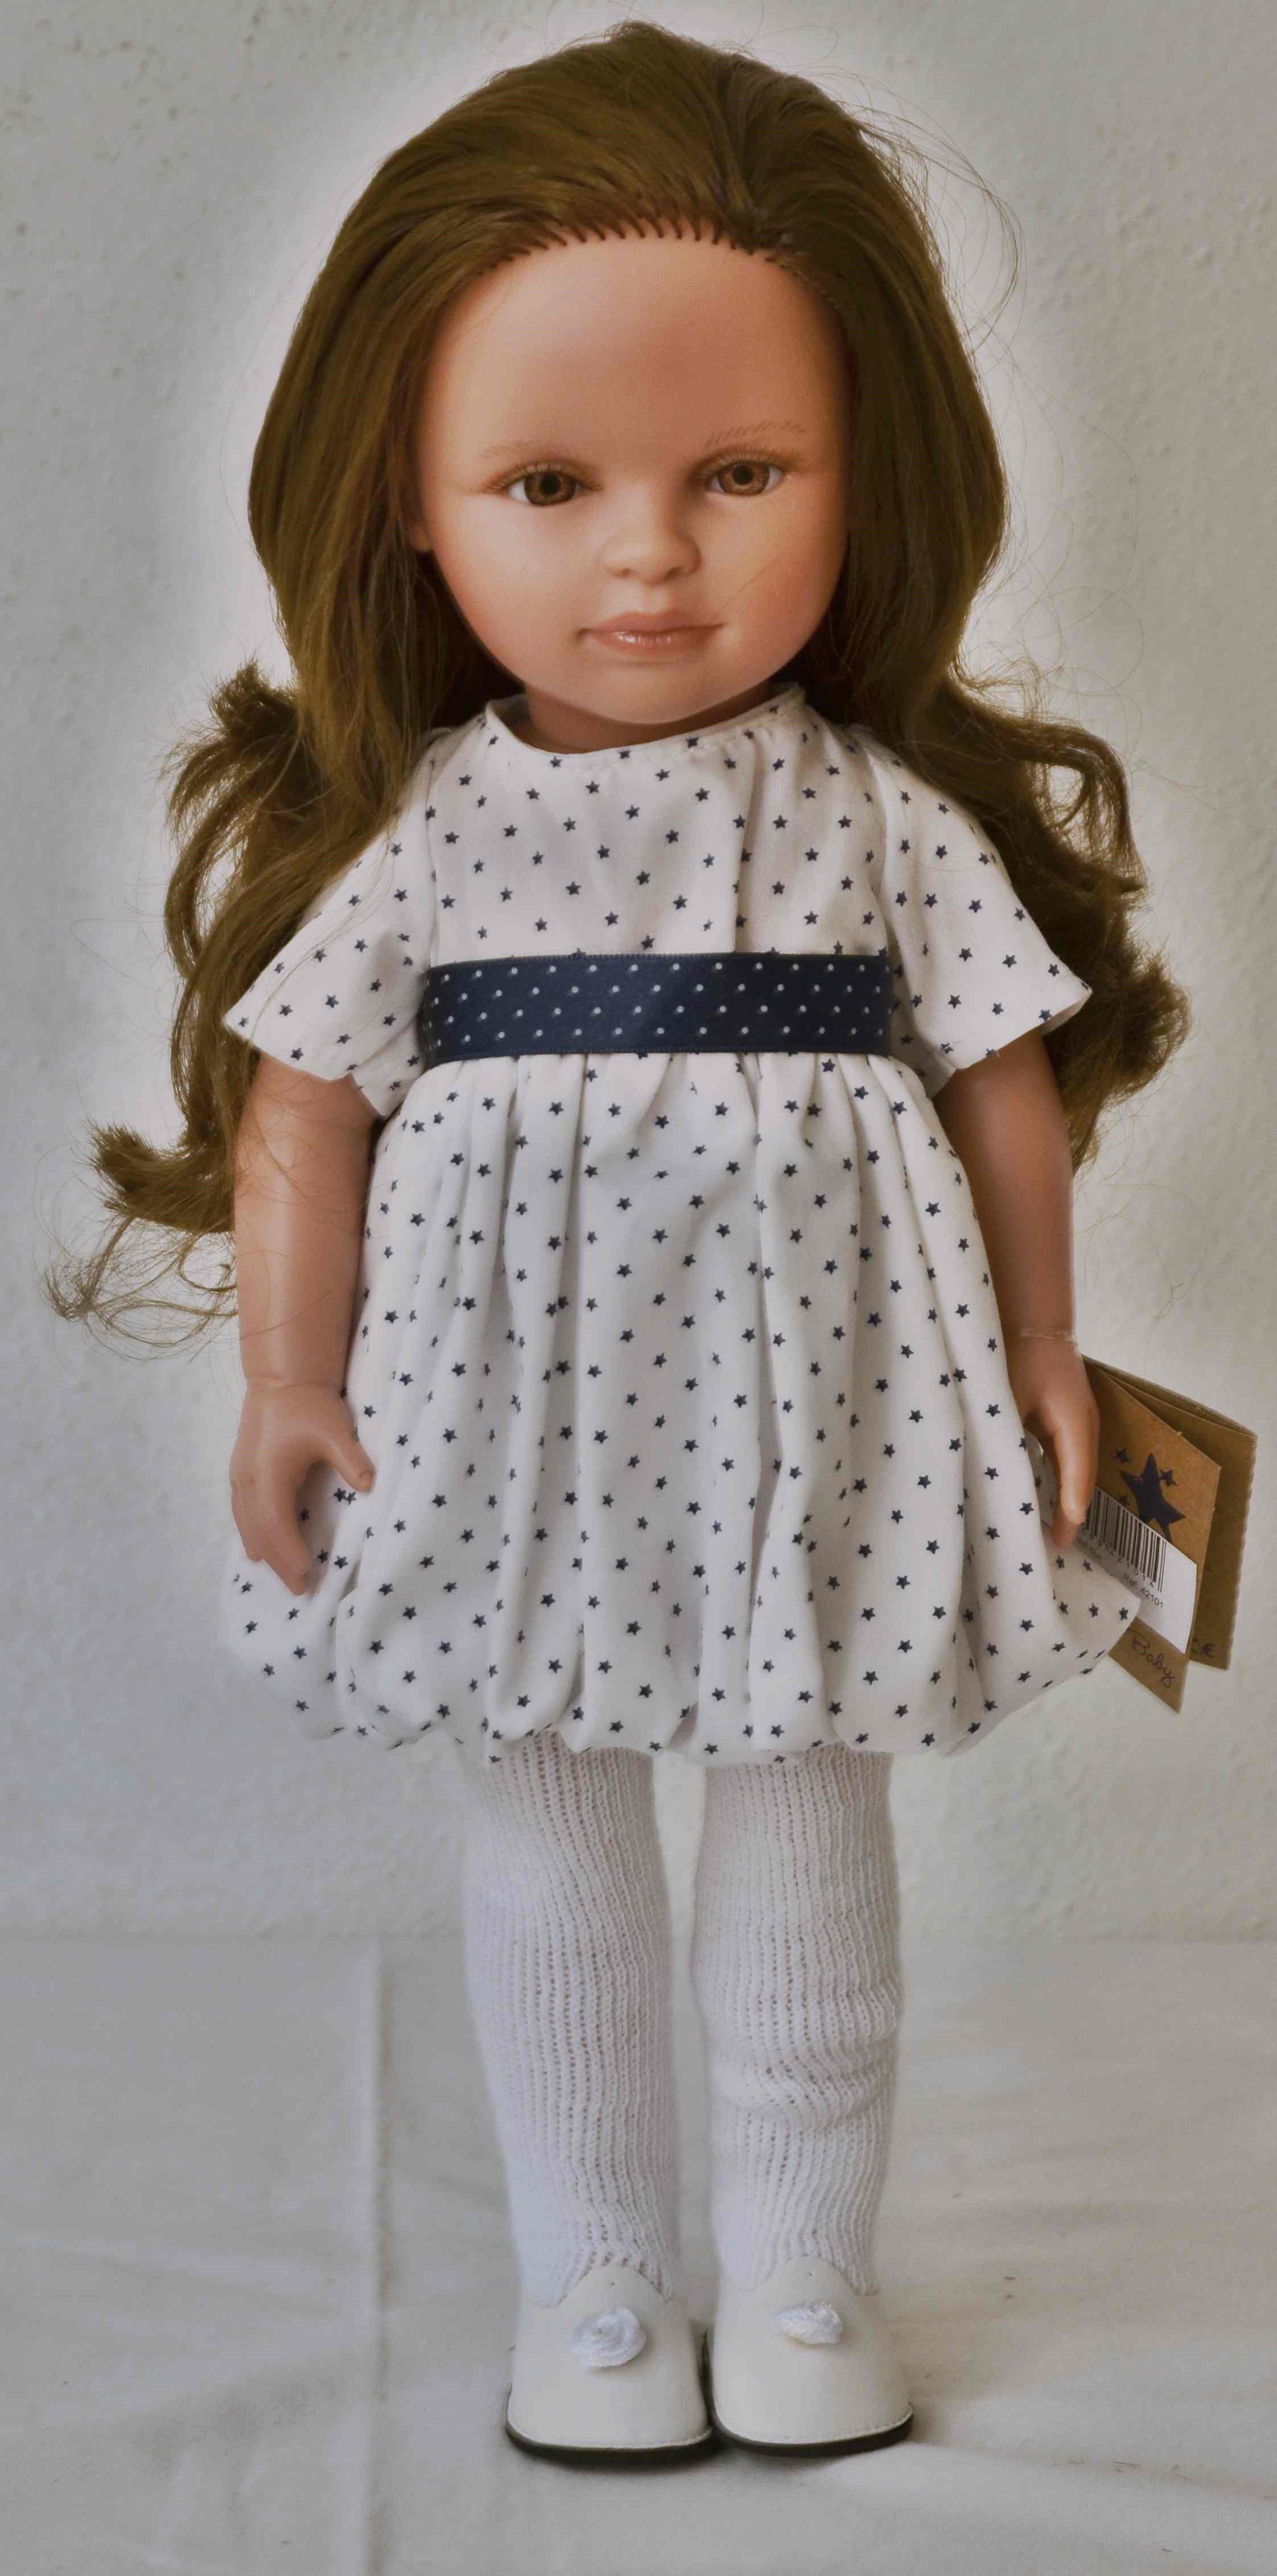 Realistická panenka Nina - puntíkaté šaty od firmy Lamagik ze Španělska